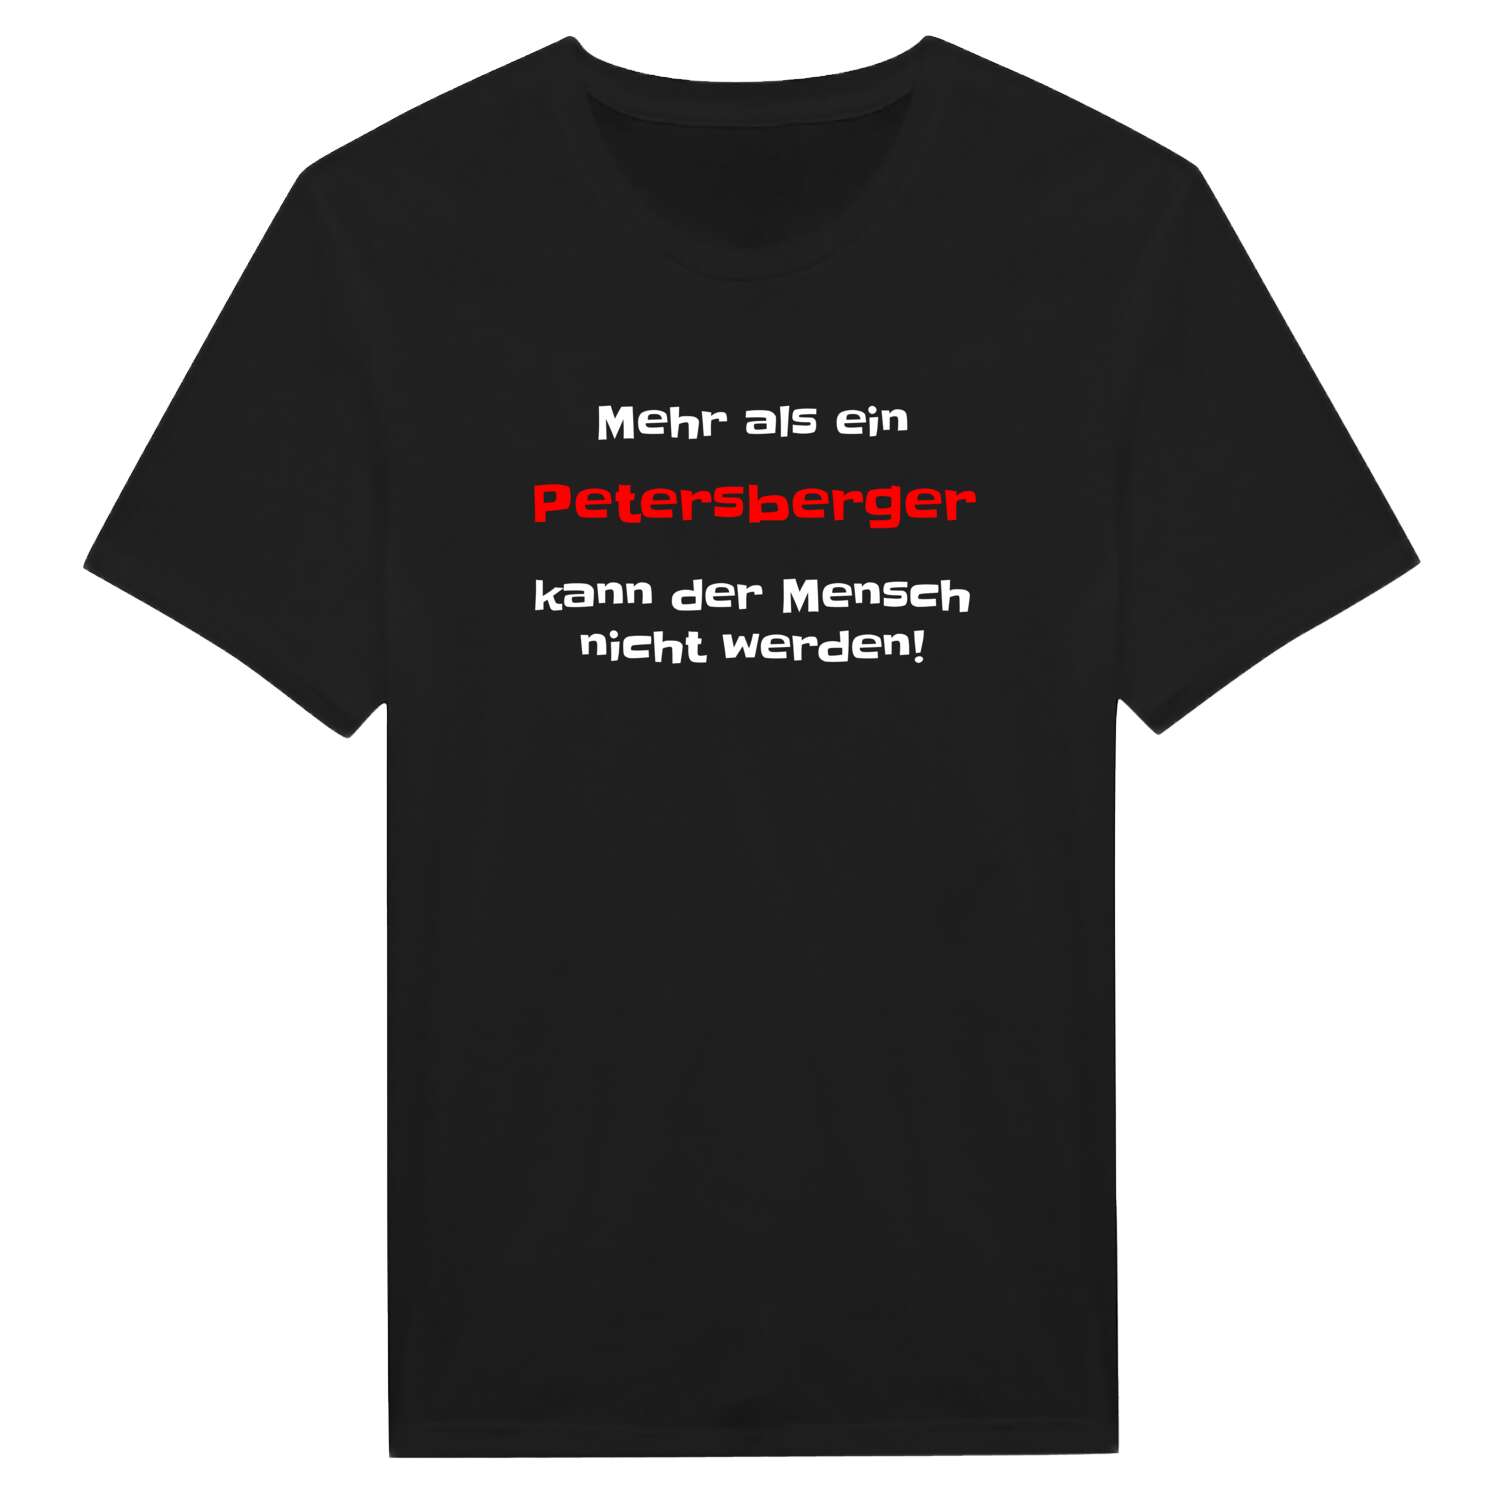 Petersberg T-Shirt »Mehr als ein«